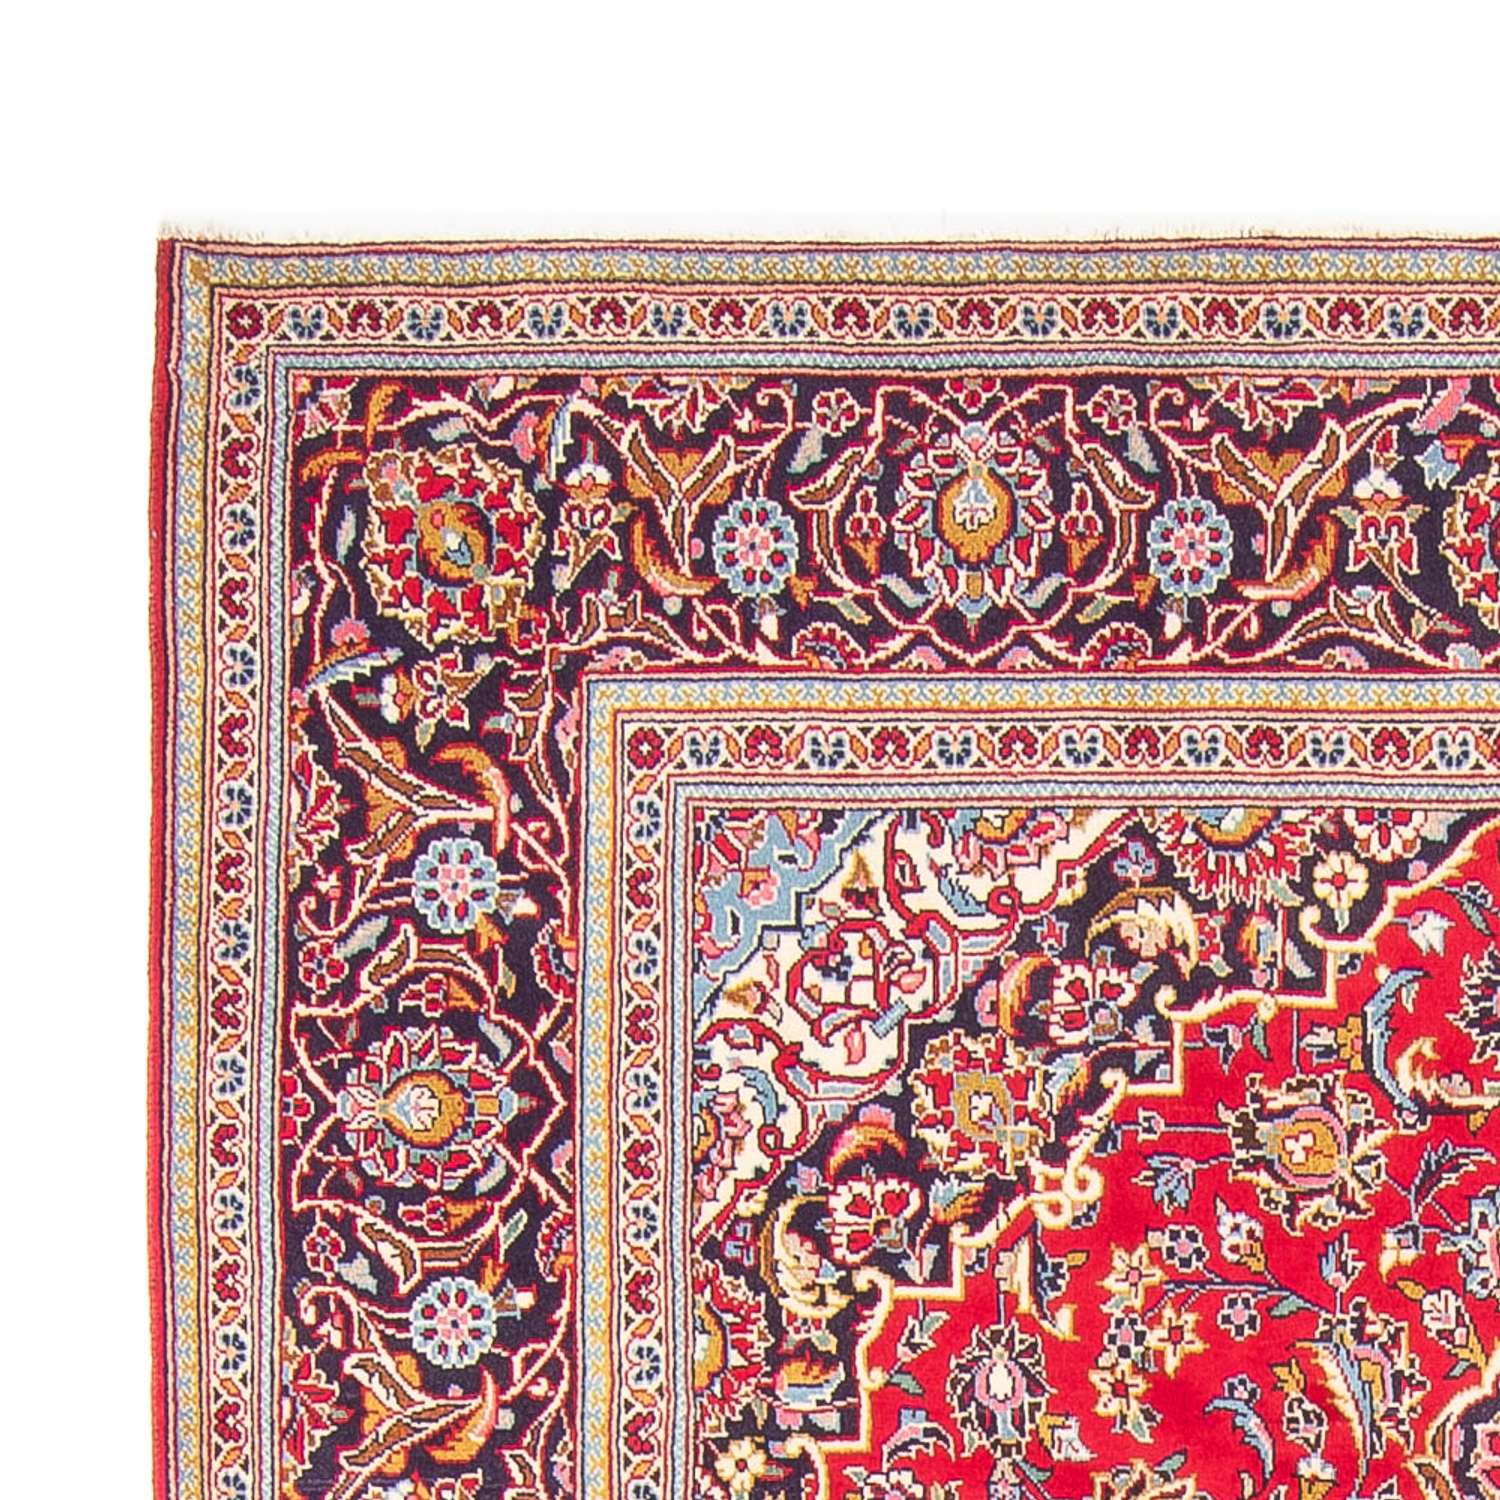 Tapete persa - Keshan - 290 x 198 cm - vermelho